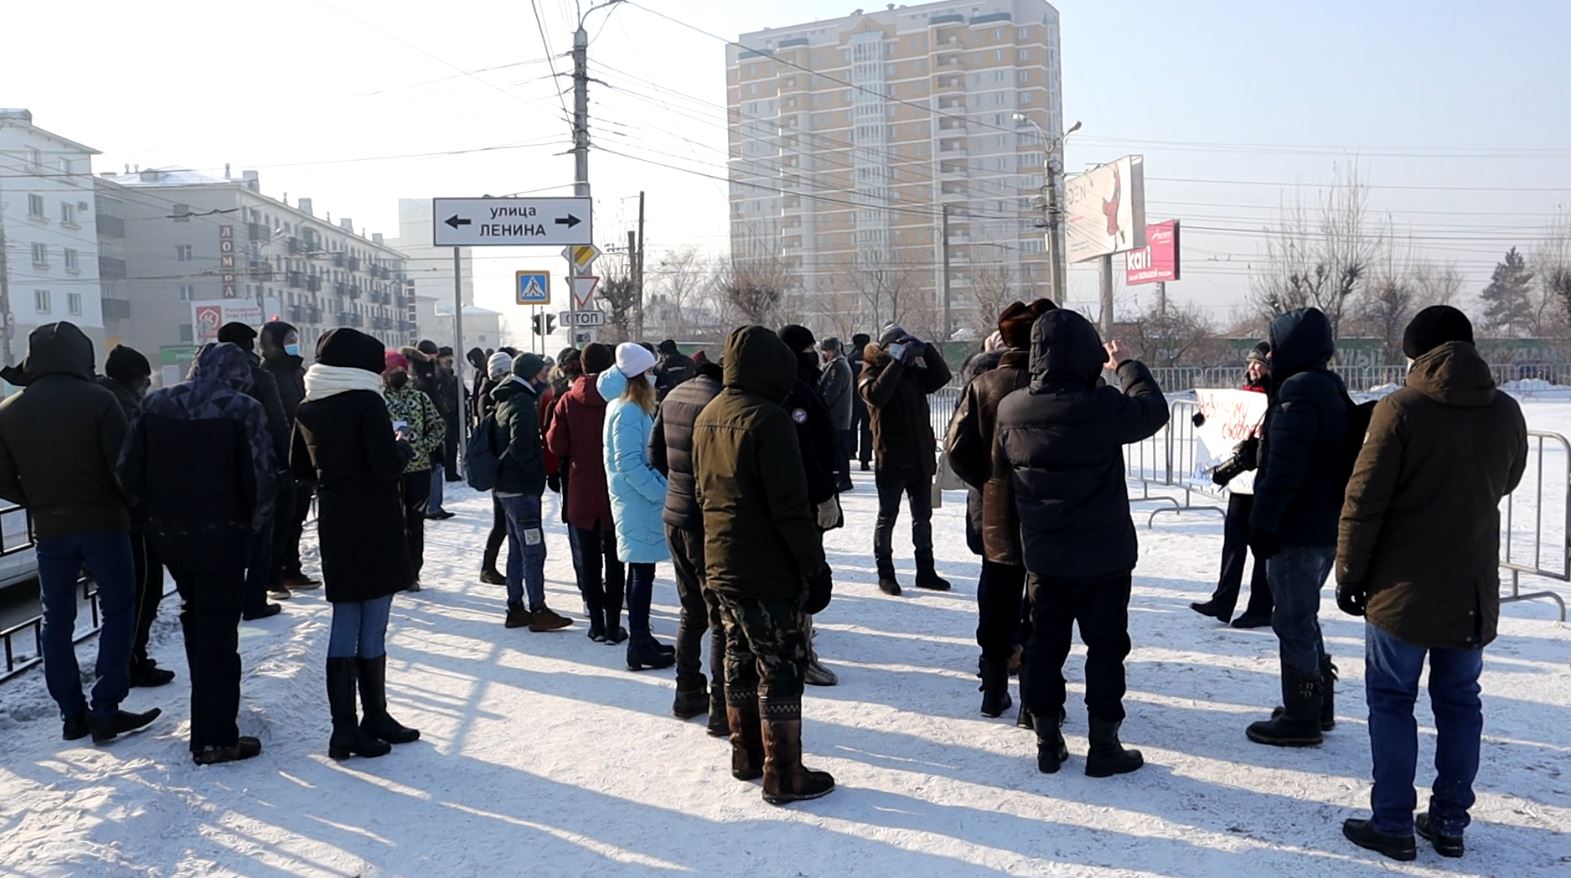 Навальная Чита, часть 2: Митинг полицейских и журналистов